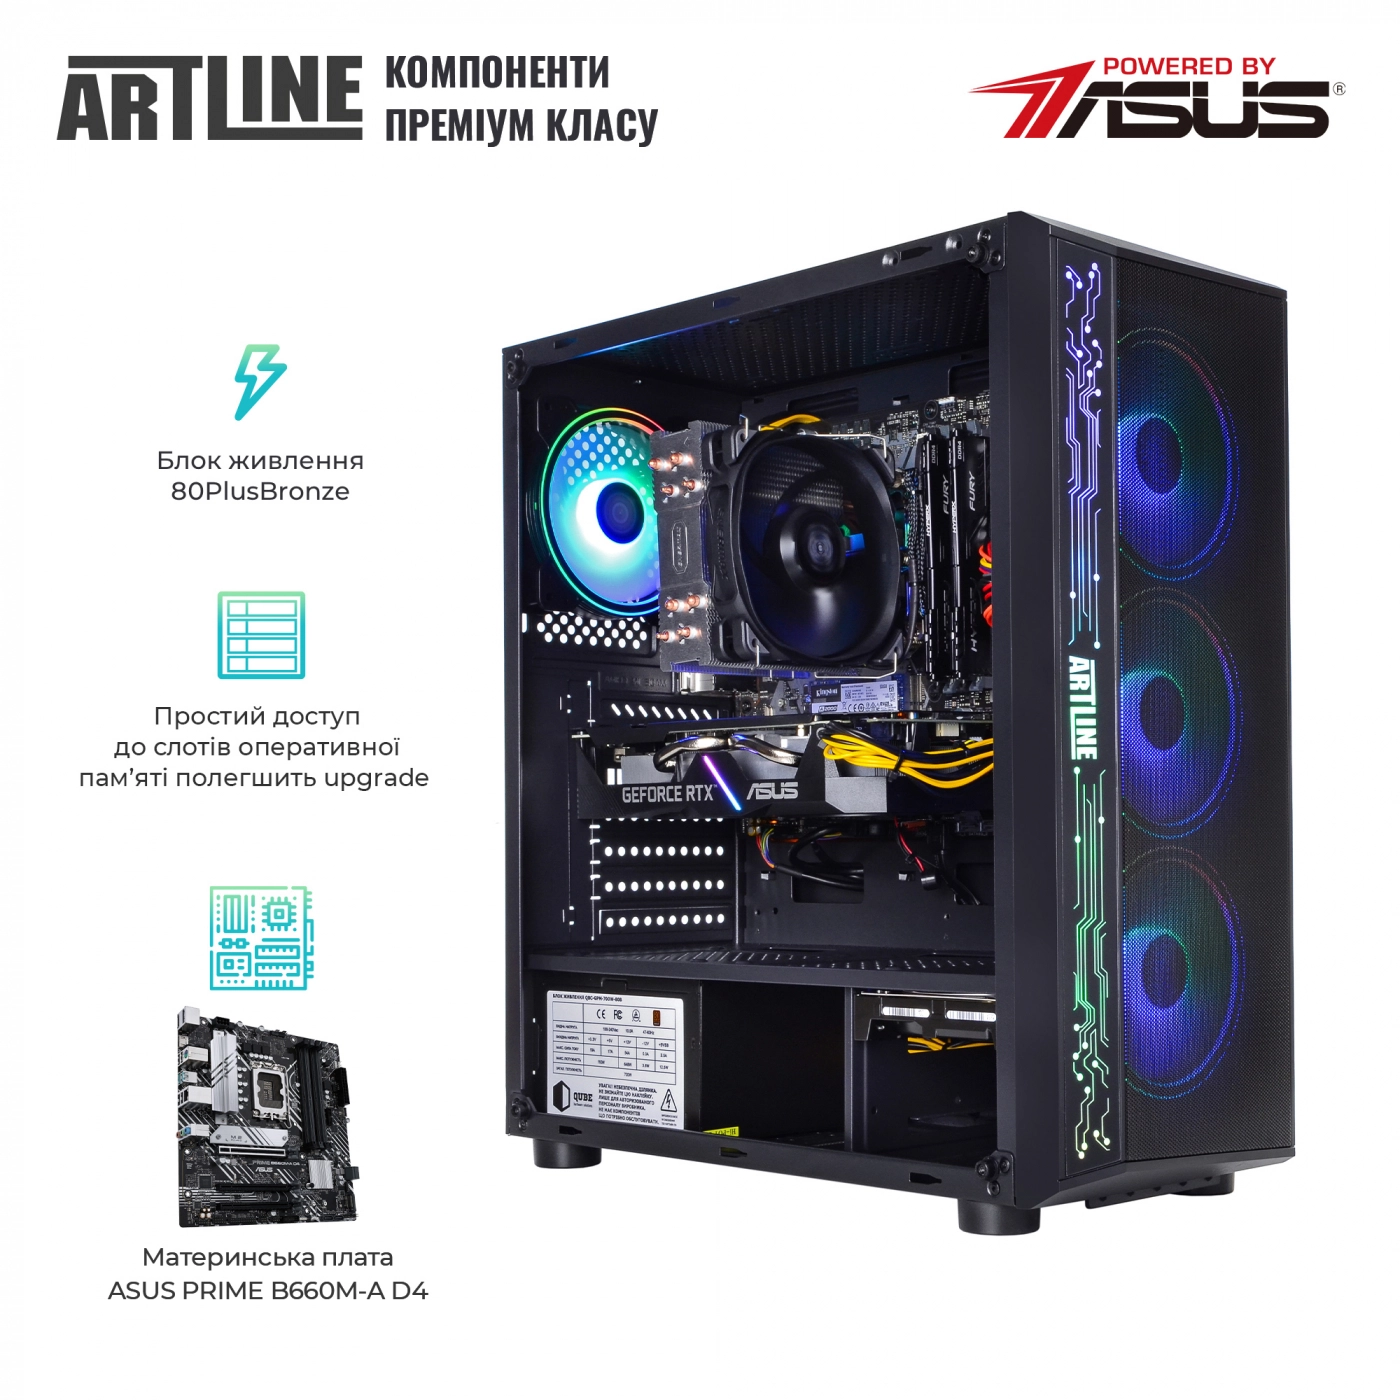 Купить Компьютер ARTLINE Gaming X75v53 - фото 3